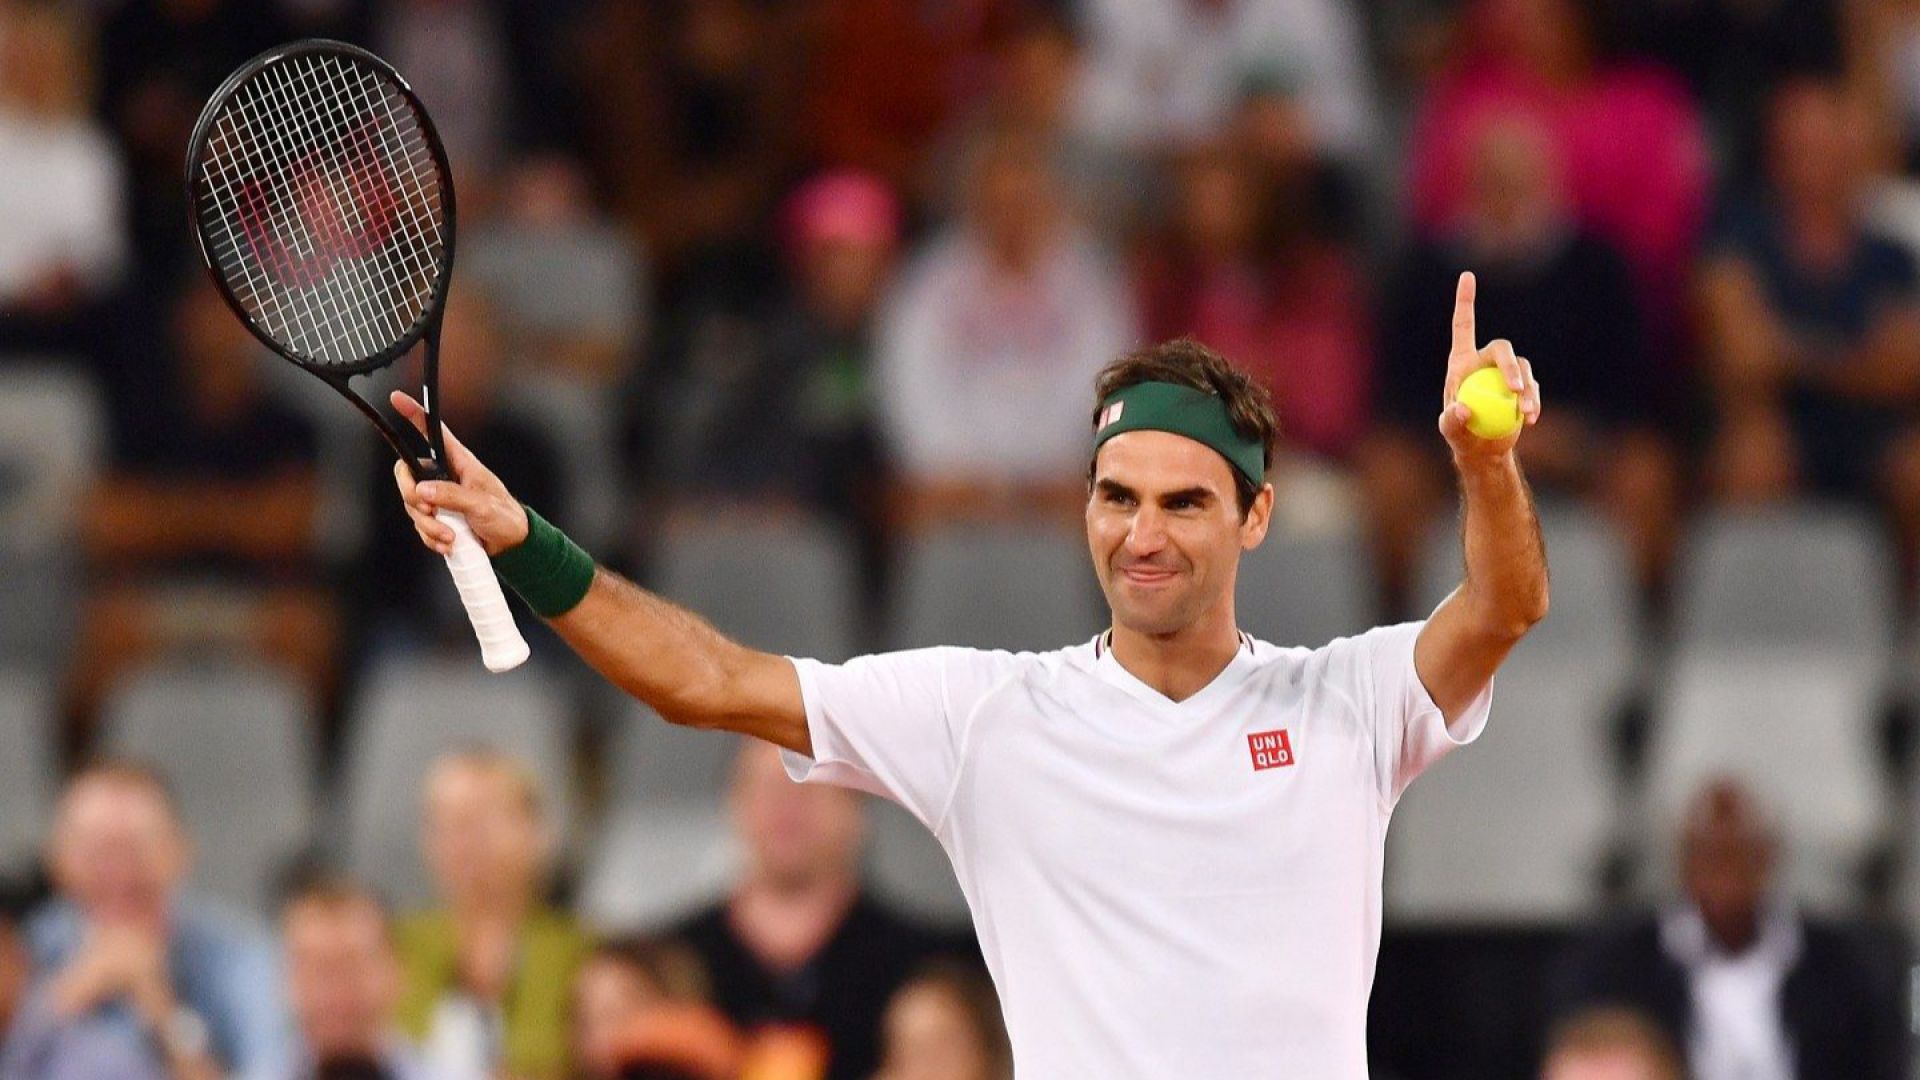 След 403 безкрайни дни извън тениса, Маестро Федерер се завръща